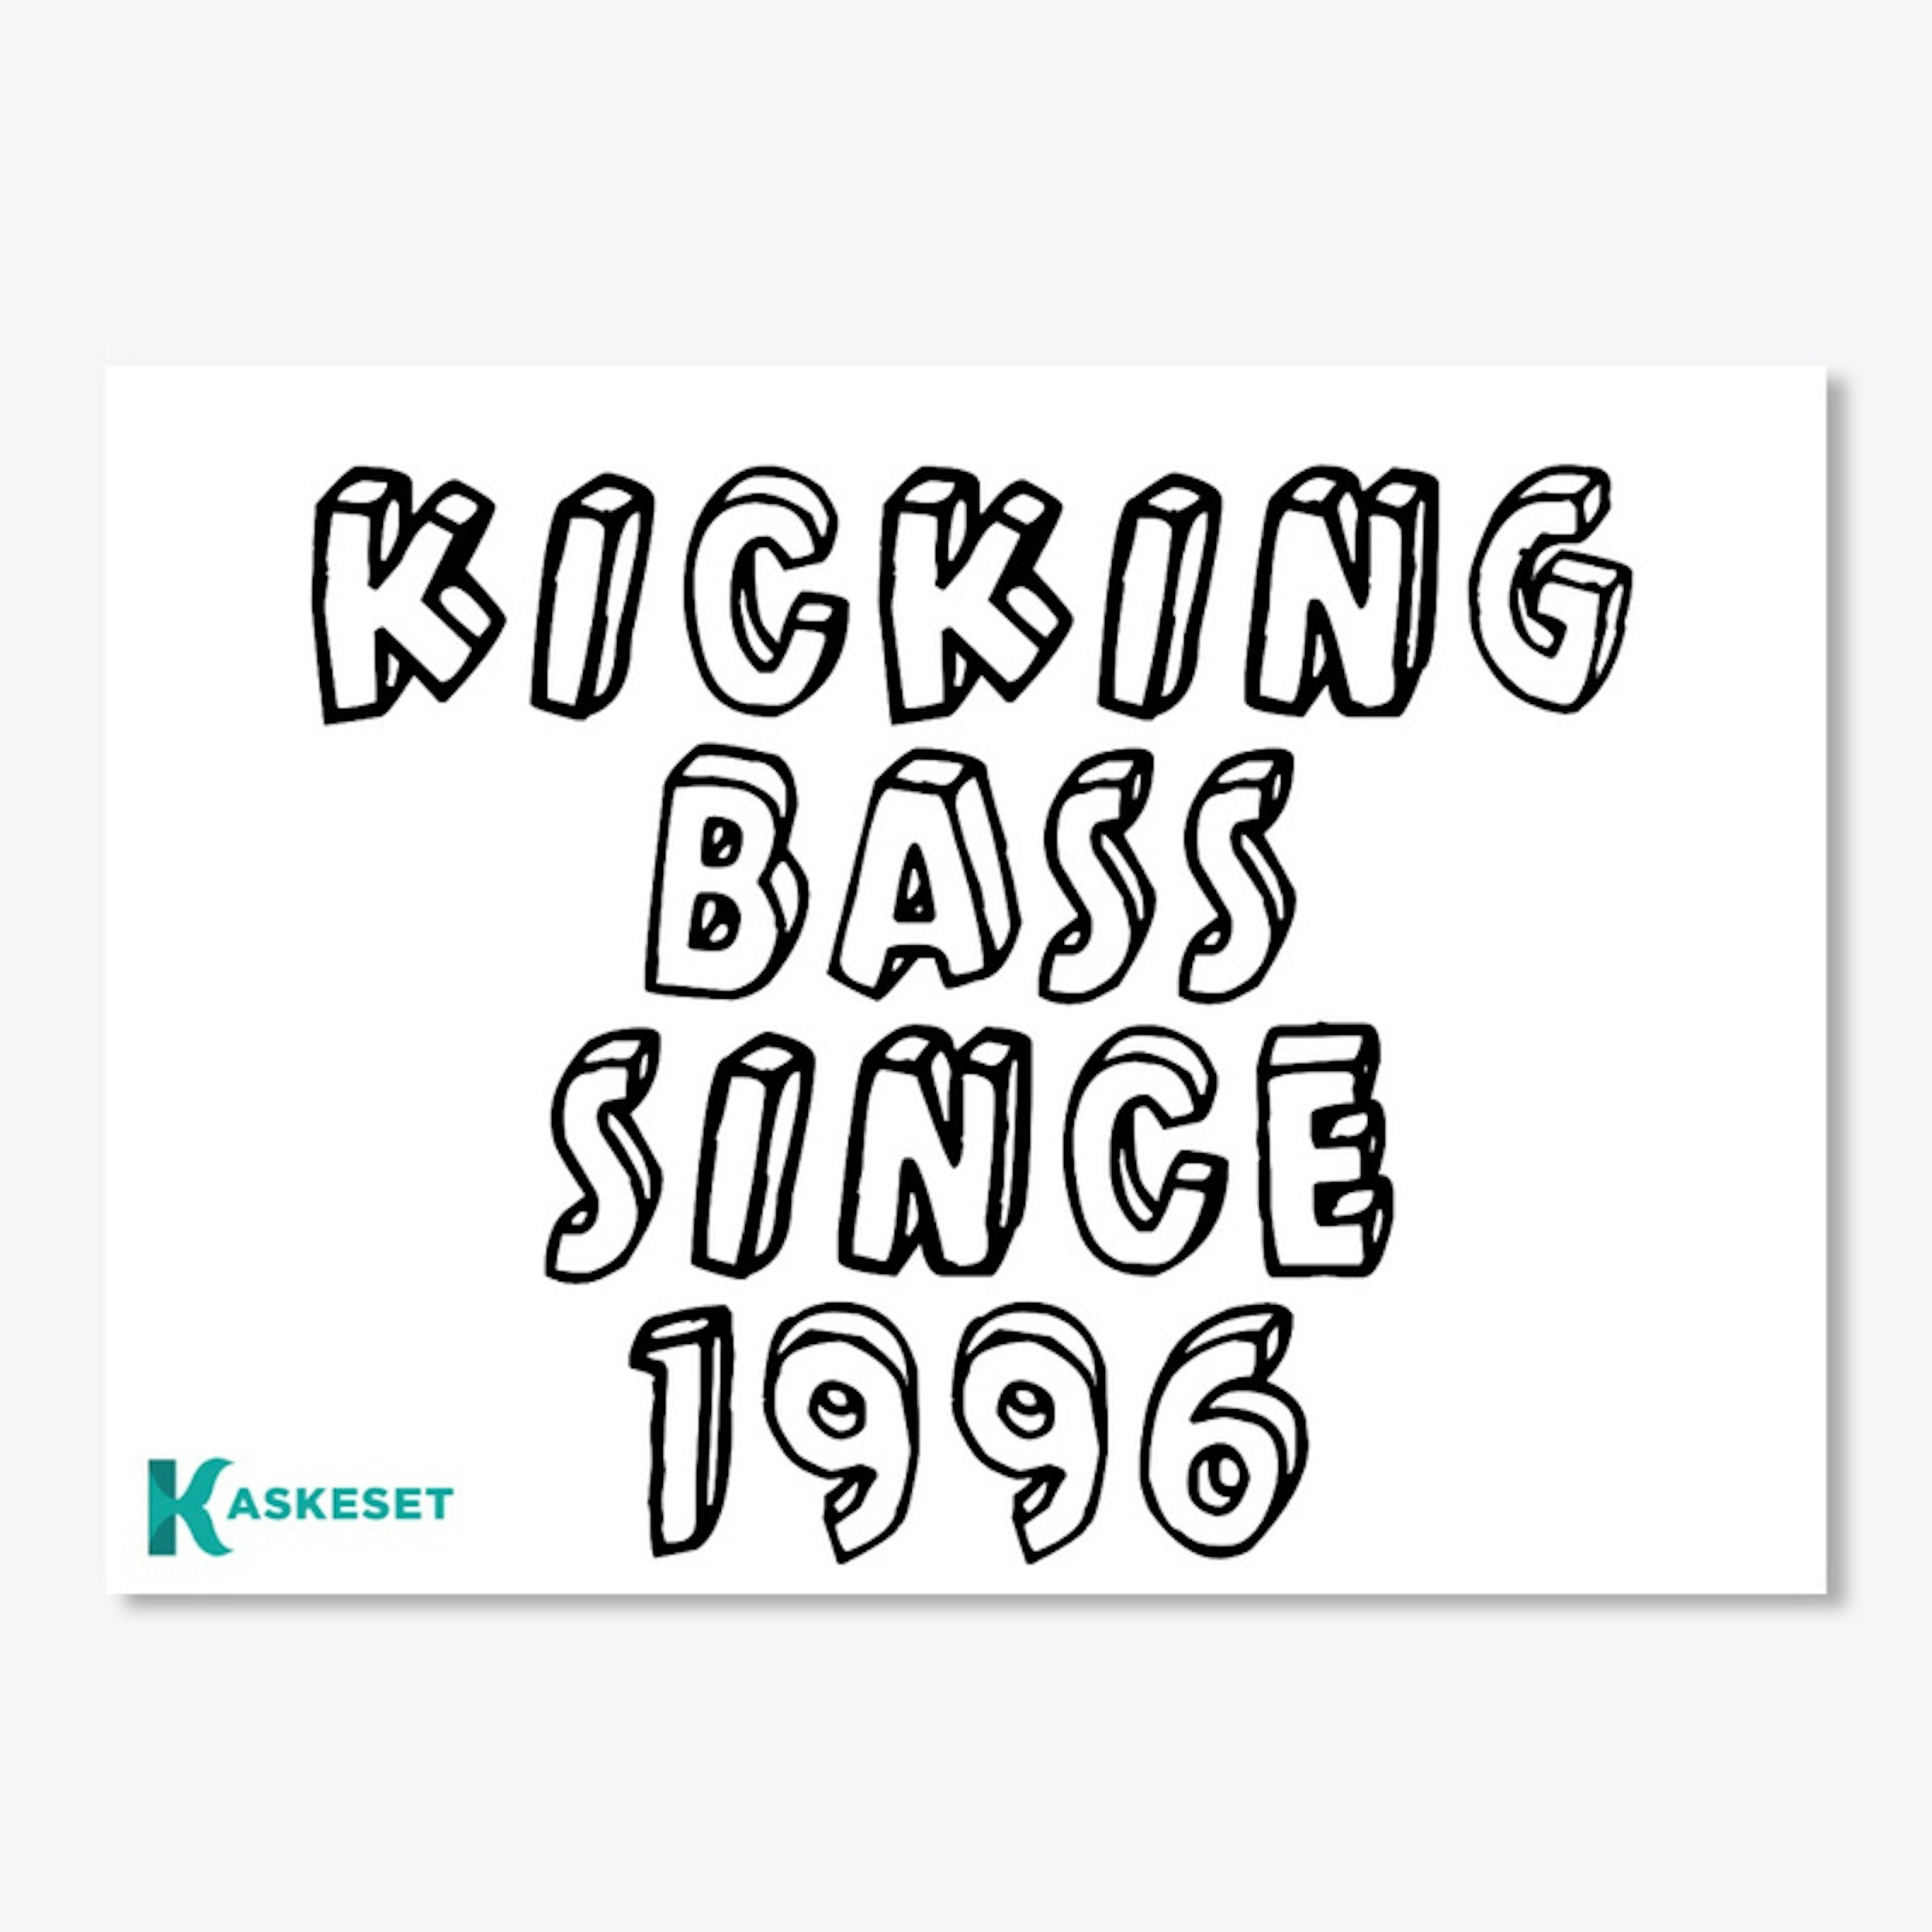 "Kicking Bass" Sticker